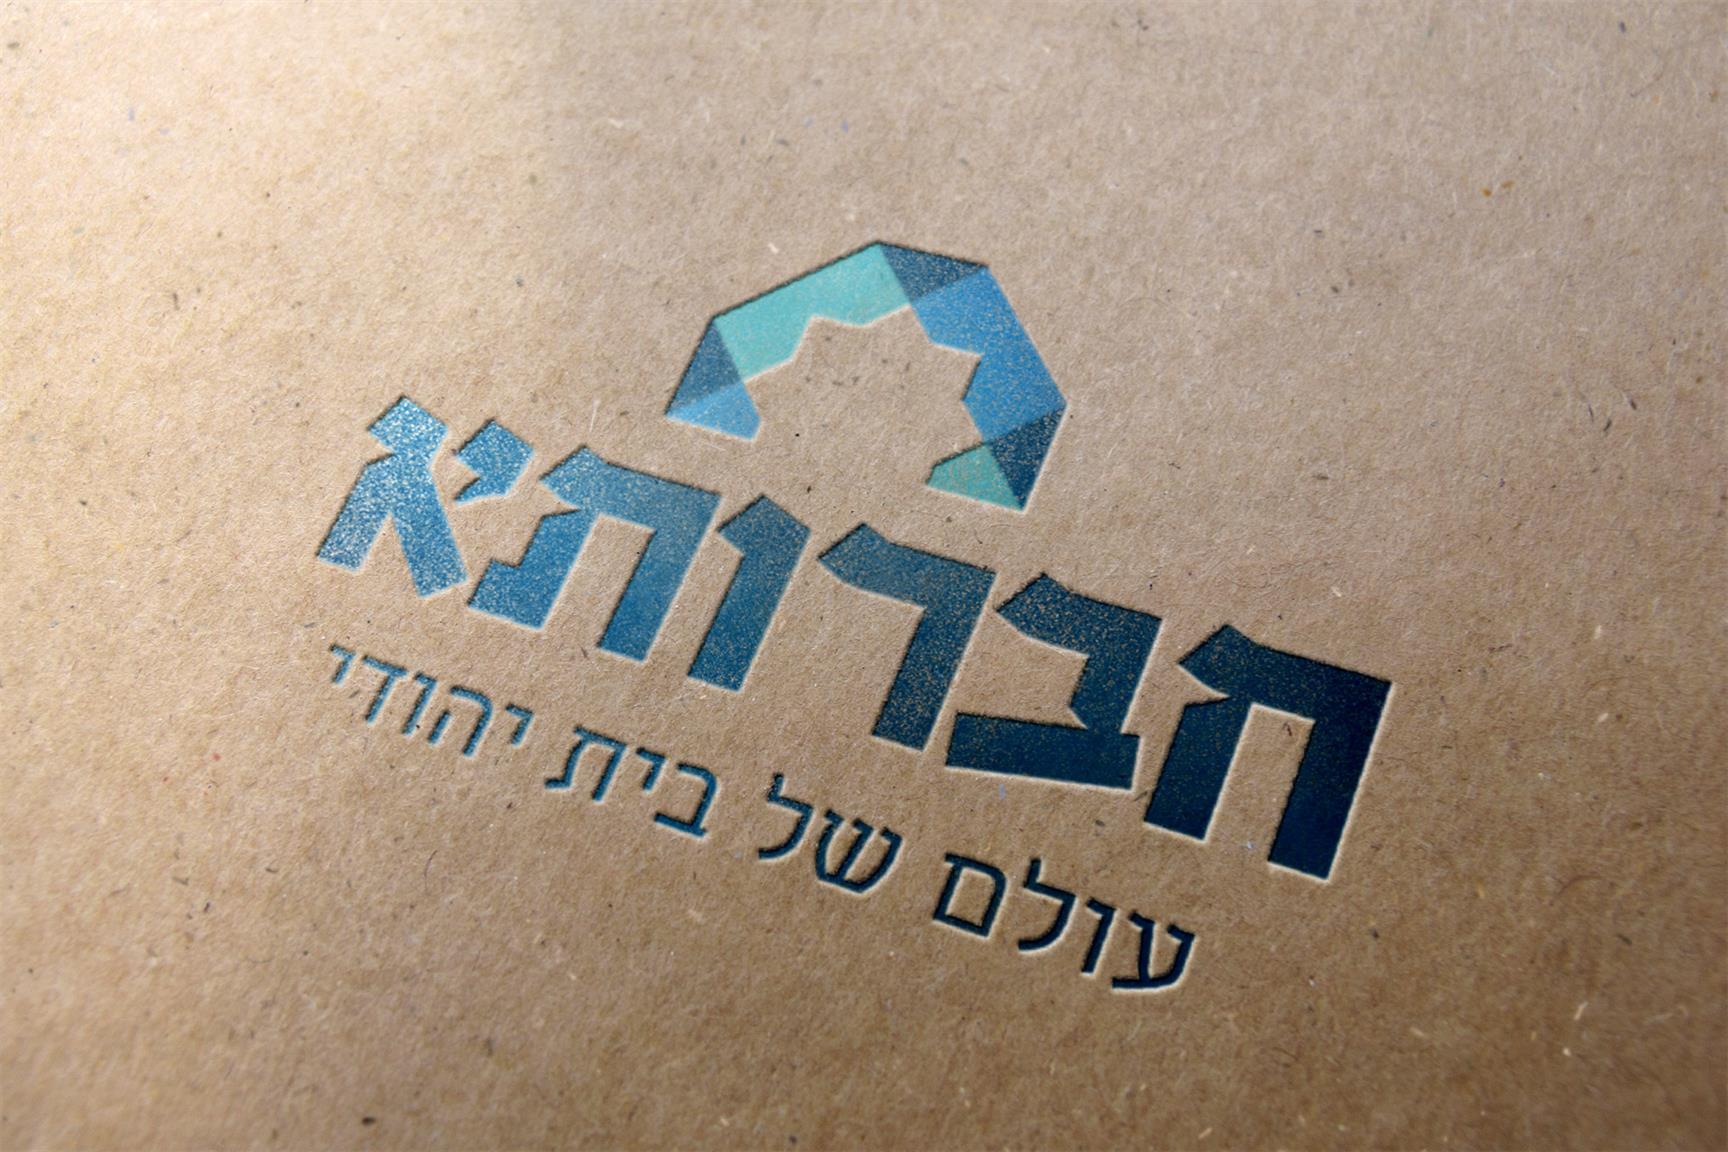 חברותא goodעיצוב לוגו ומיתוג מחדש עבור חברותא רשת ספרים ויודאיקה בירושלים, סטודיו good